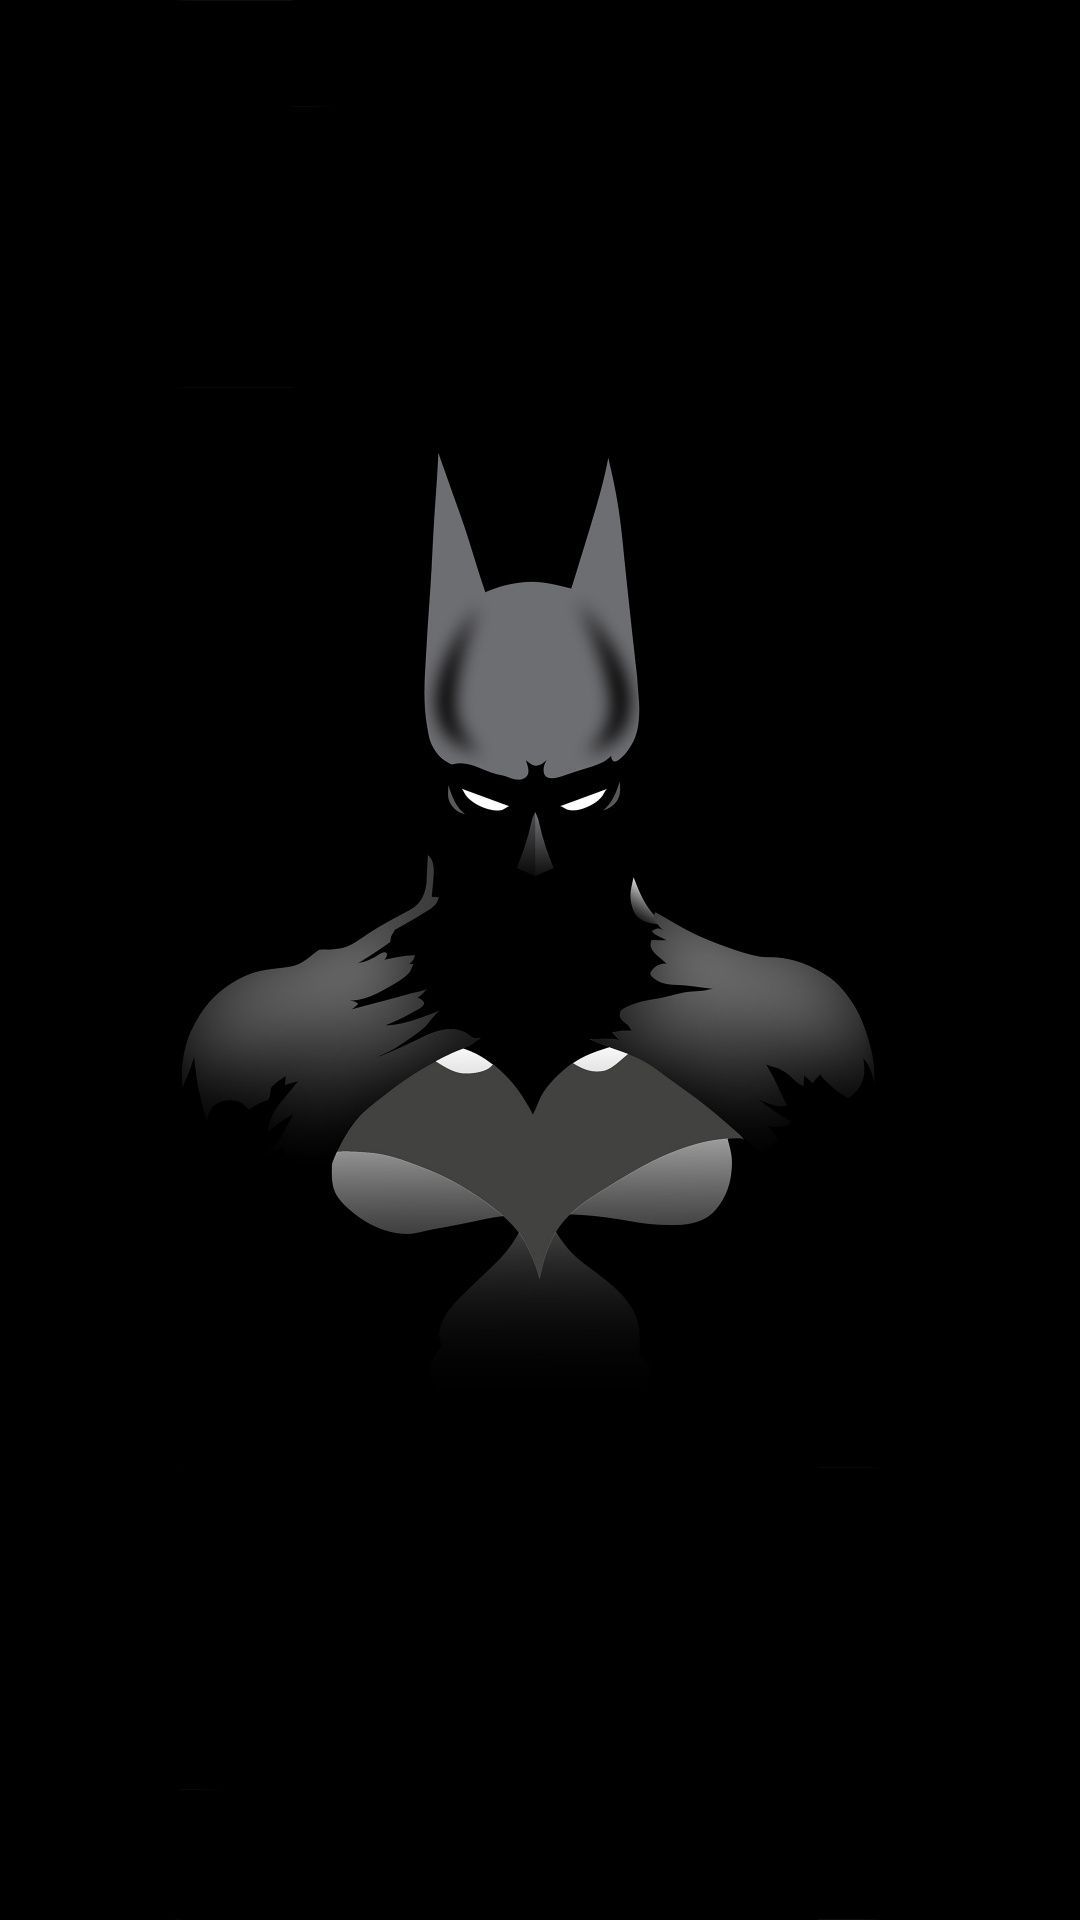 Dark knight, superhero, batman, minimalism, 1080x1920 wallpaper